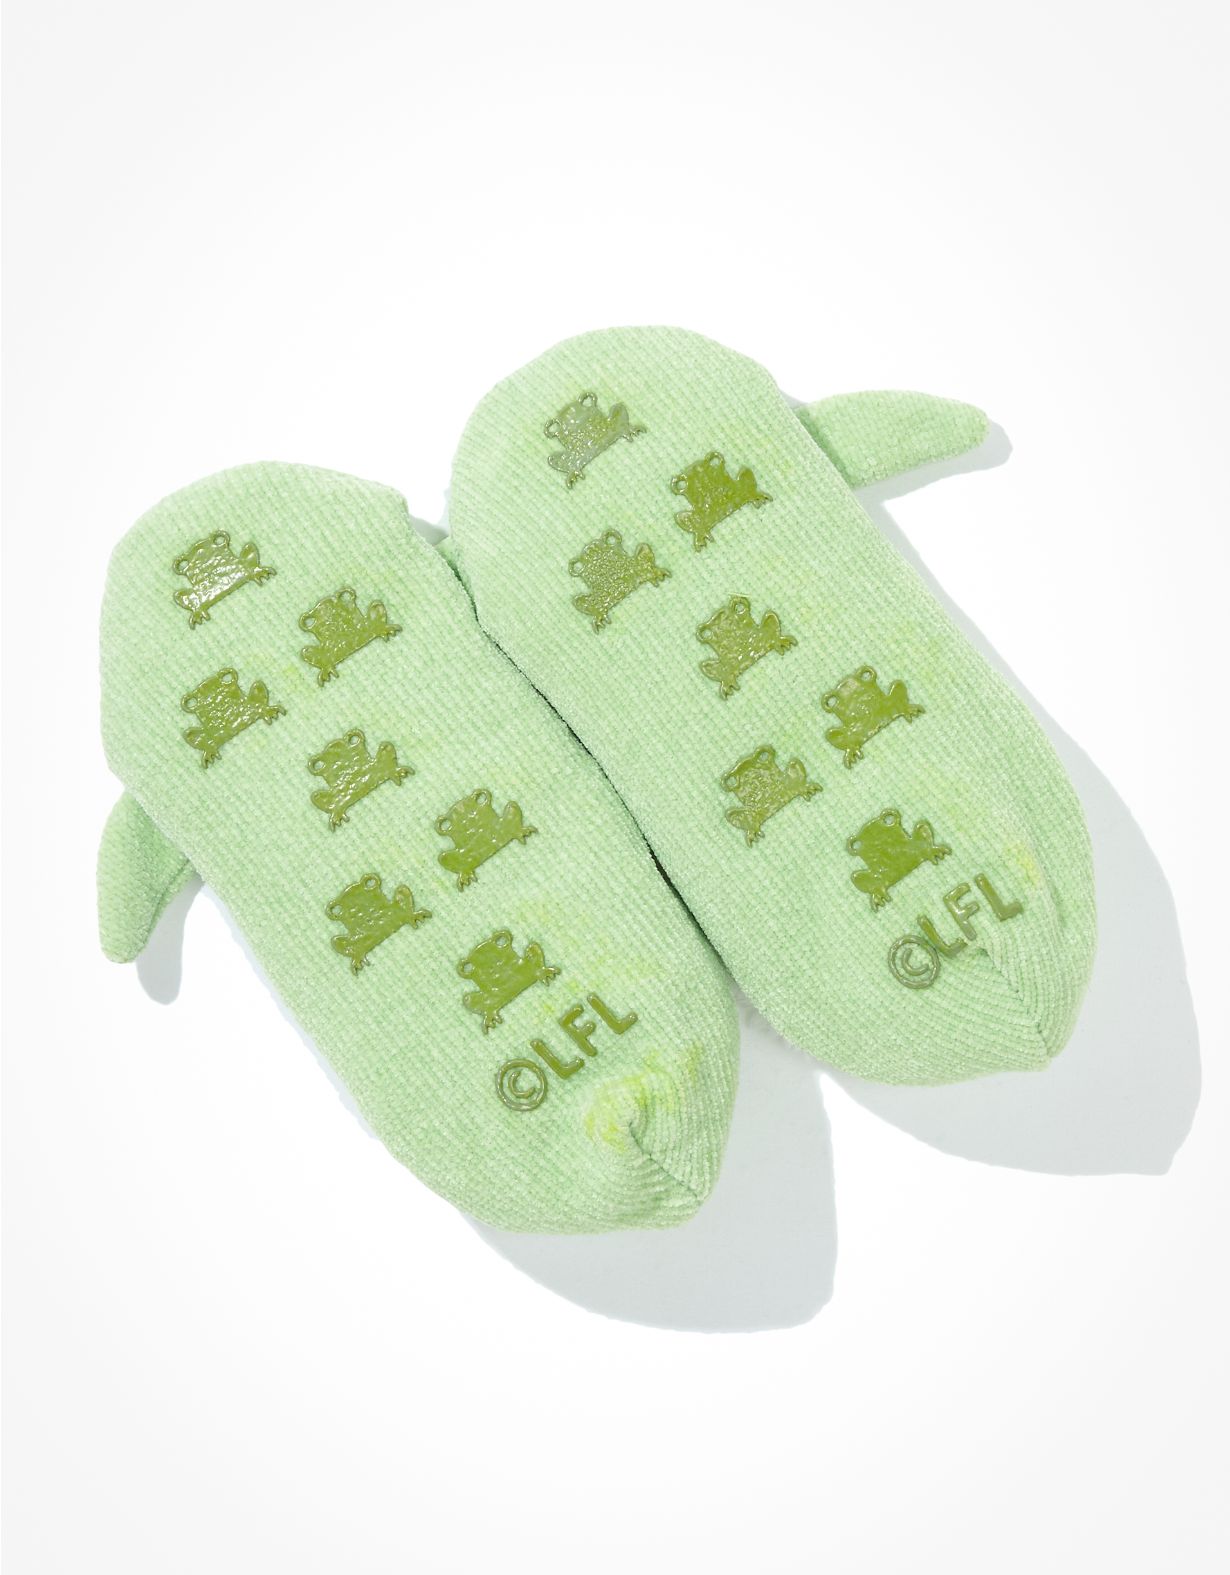 Baby Yoda Ears Slipper Sock